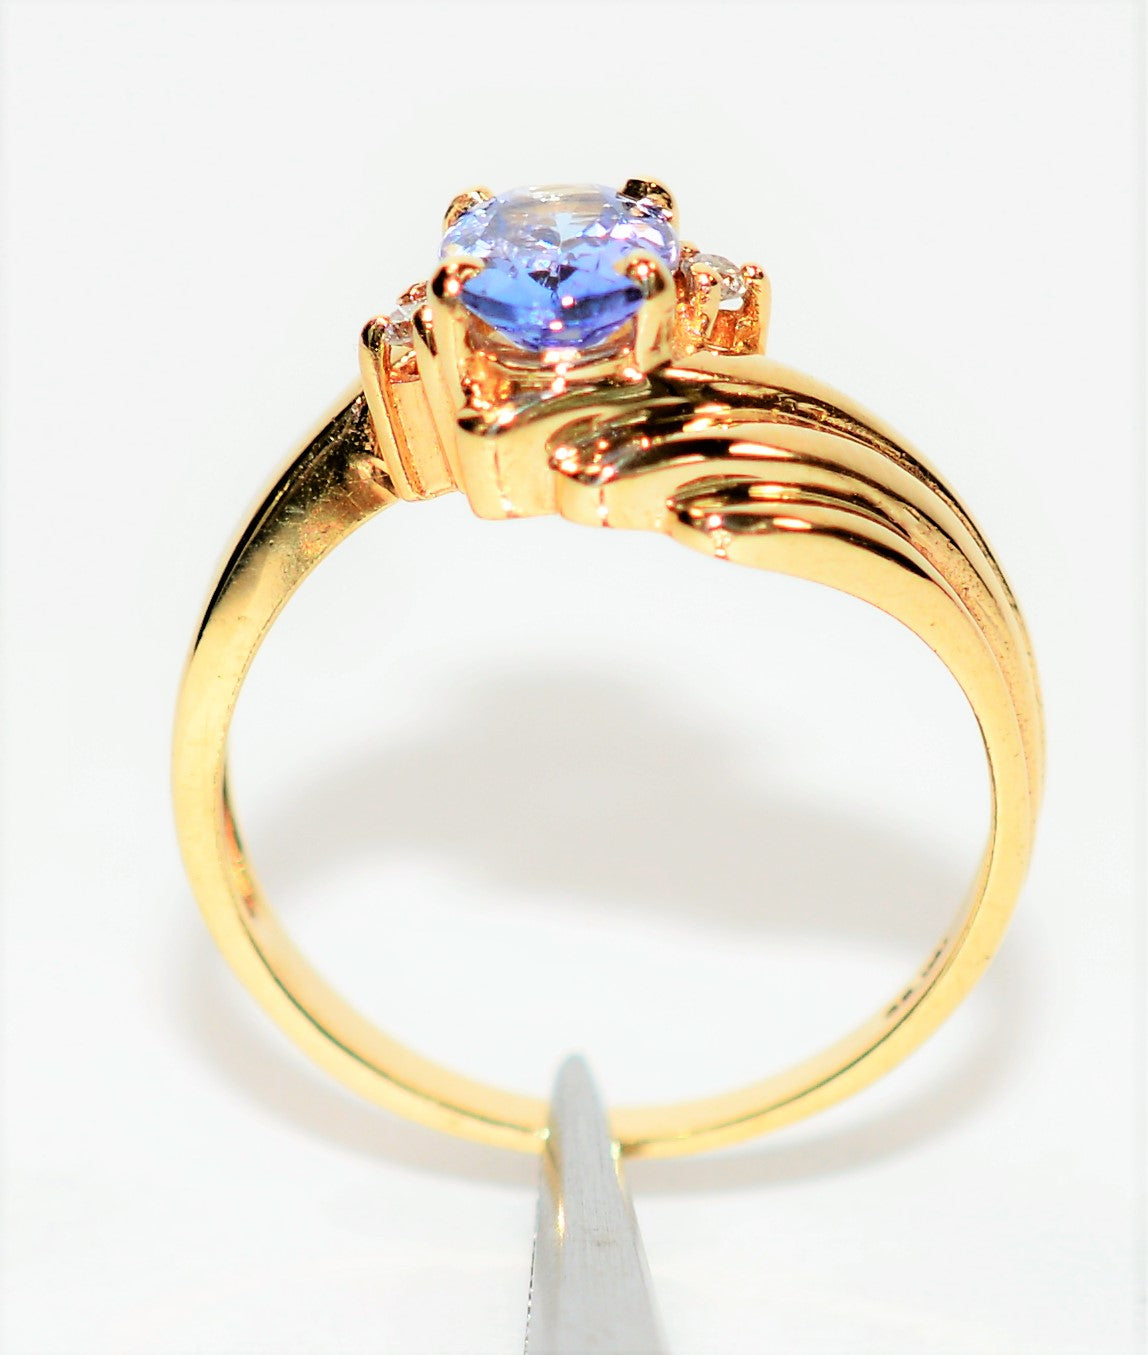 Natural Tanzanite & Diamond Ring 14K Solid Gold .79tcw Statement Ring Gemstone Ring Birthstone Ring Ladies Ring Women's Ring Cocktail Ring